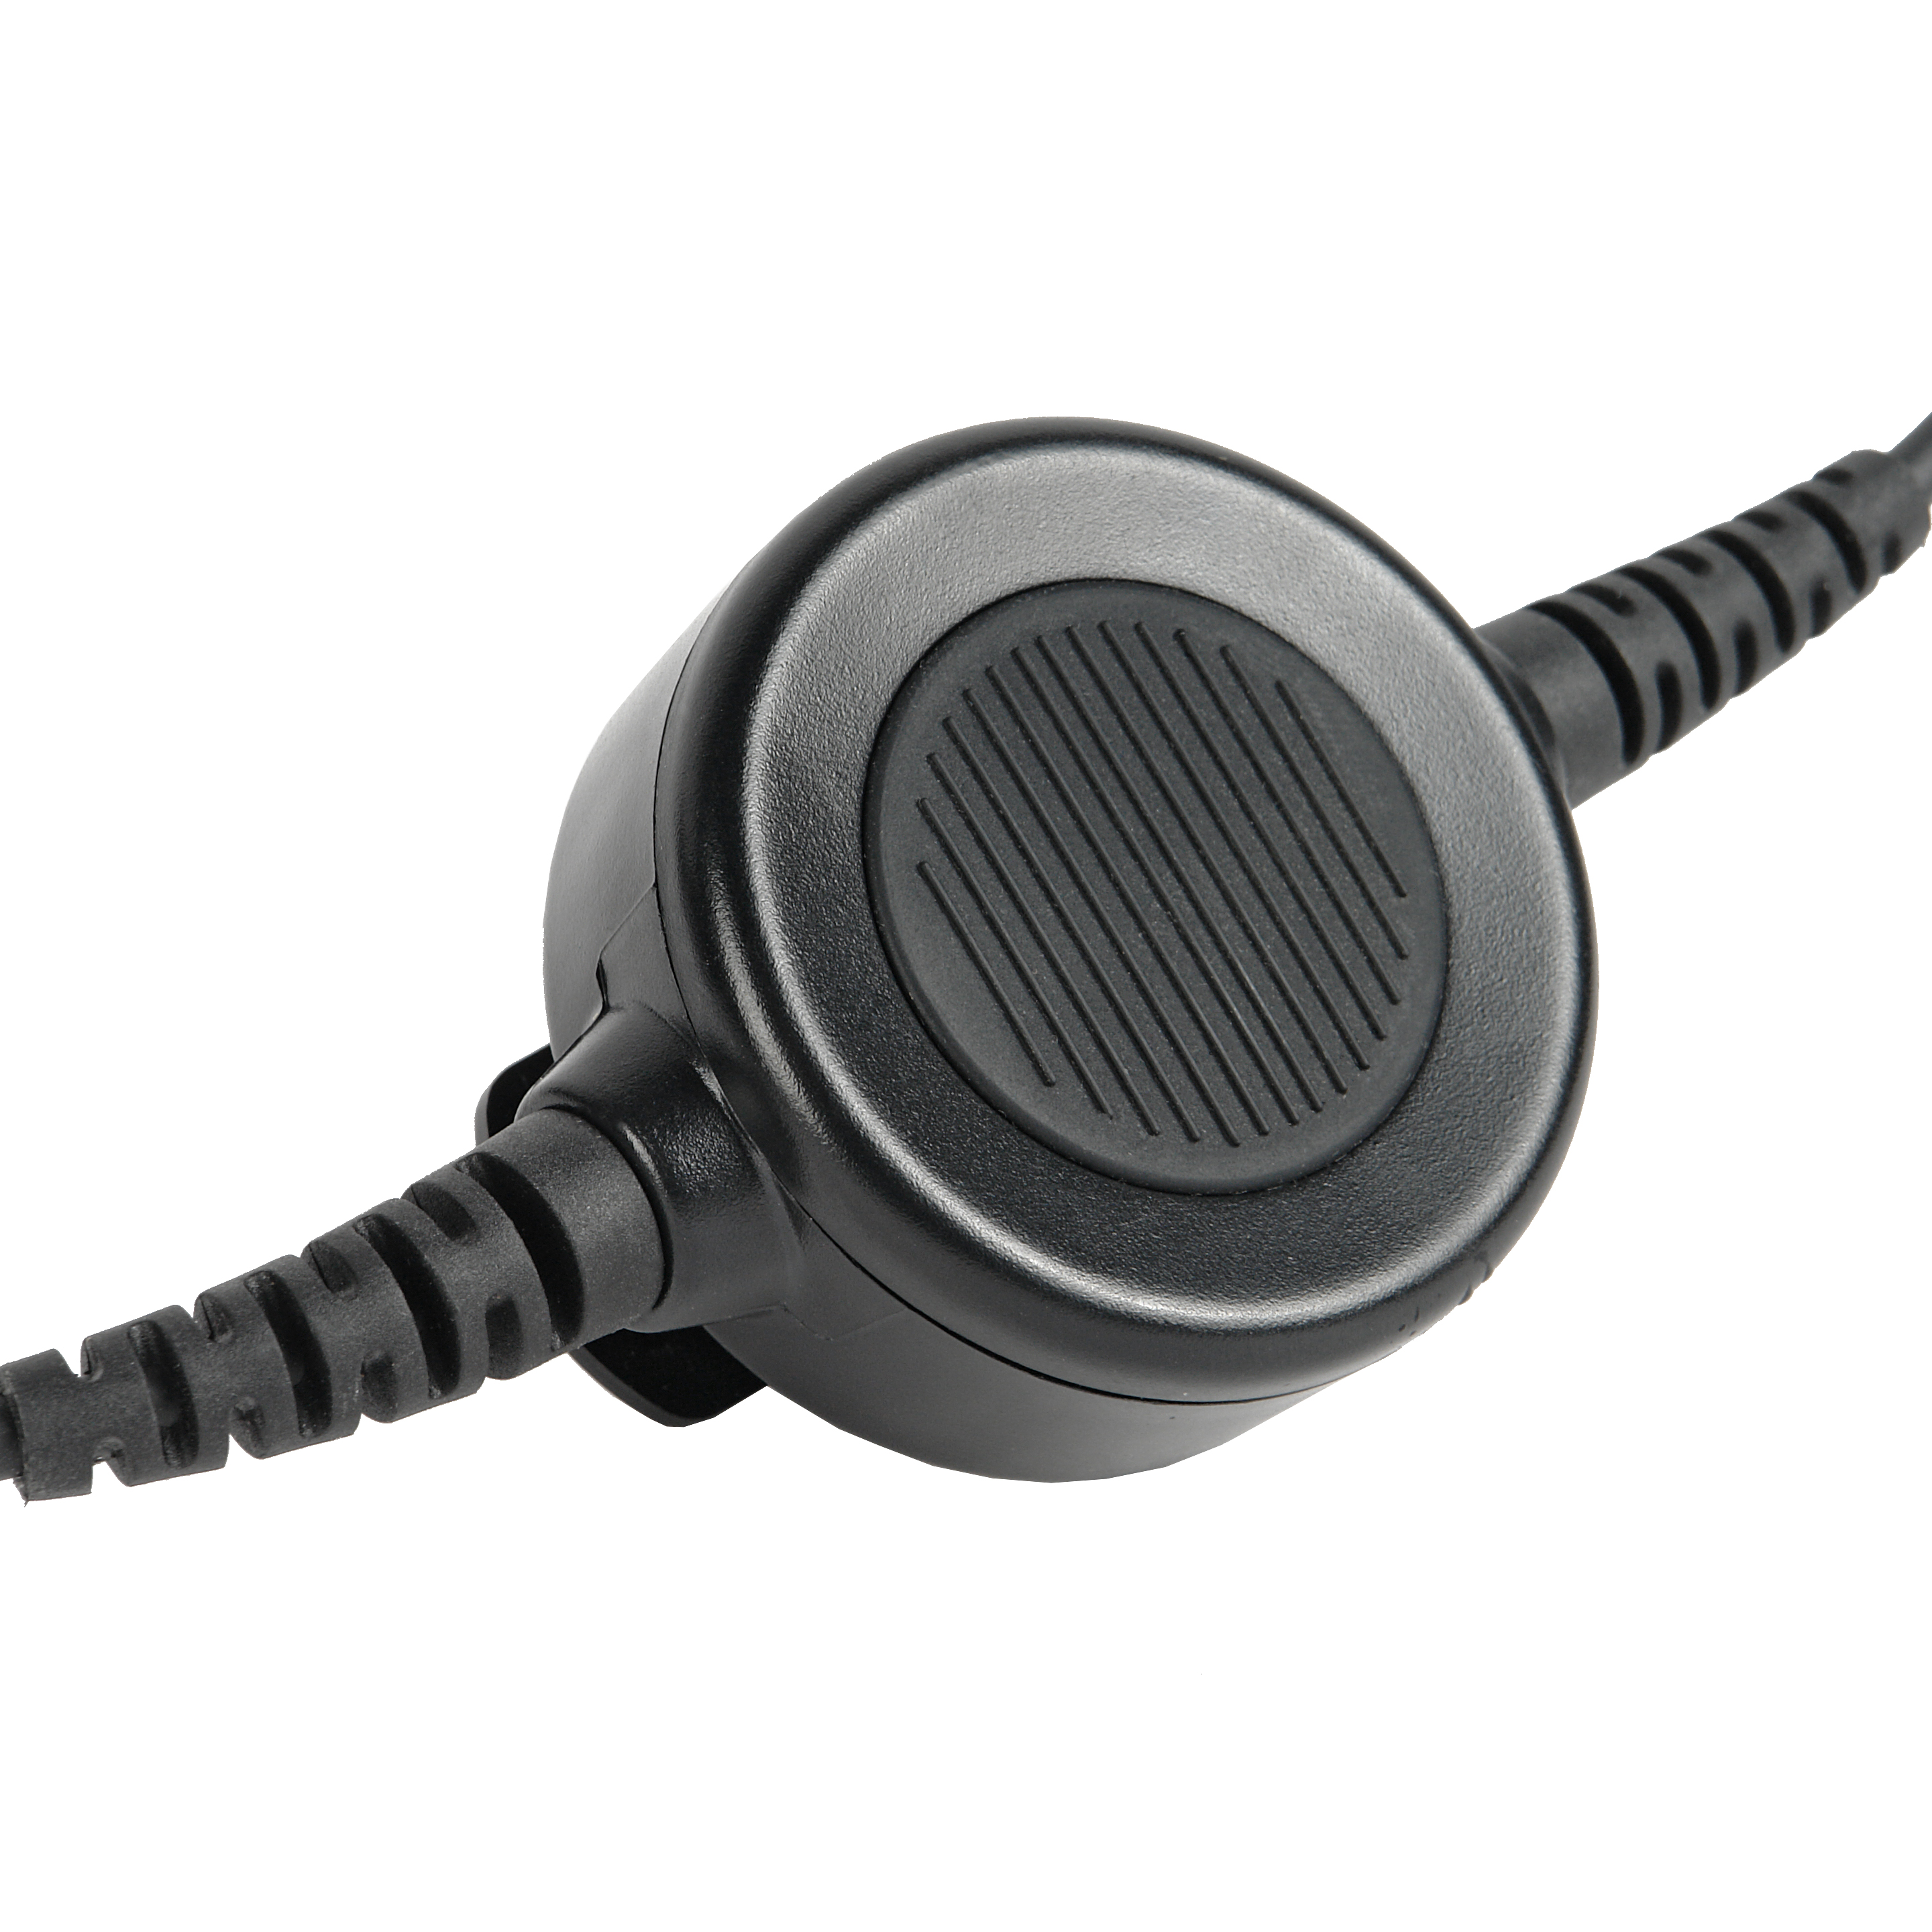    Veber Headset 120PRO   Ultra-mart